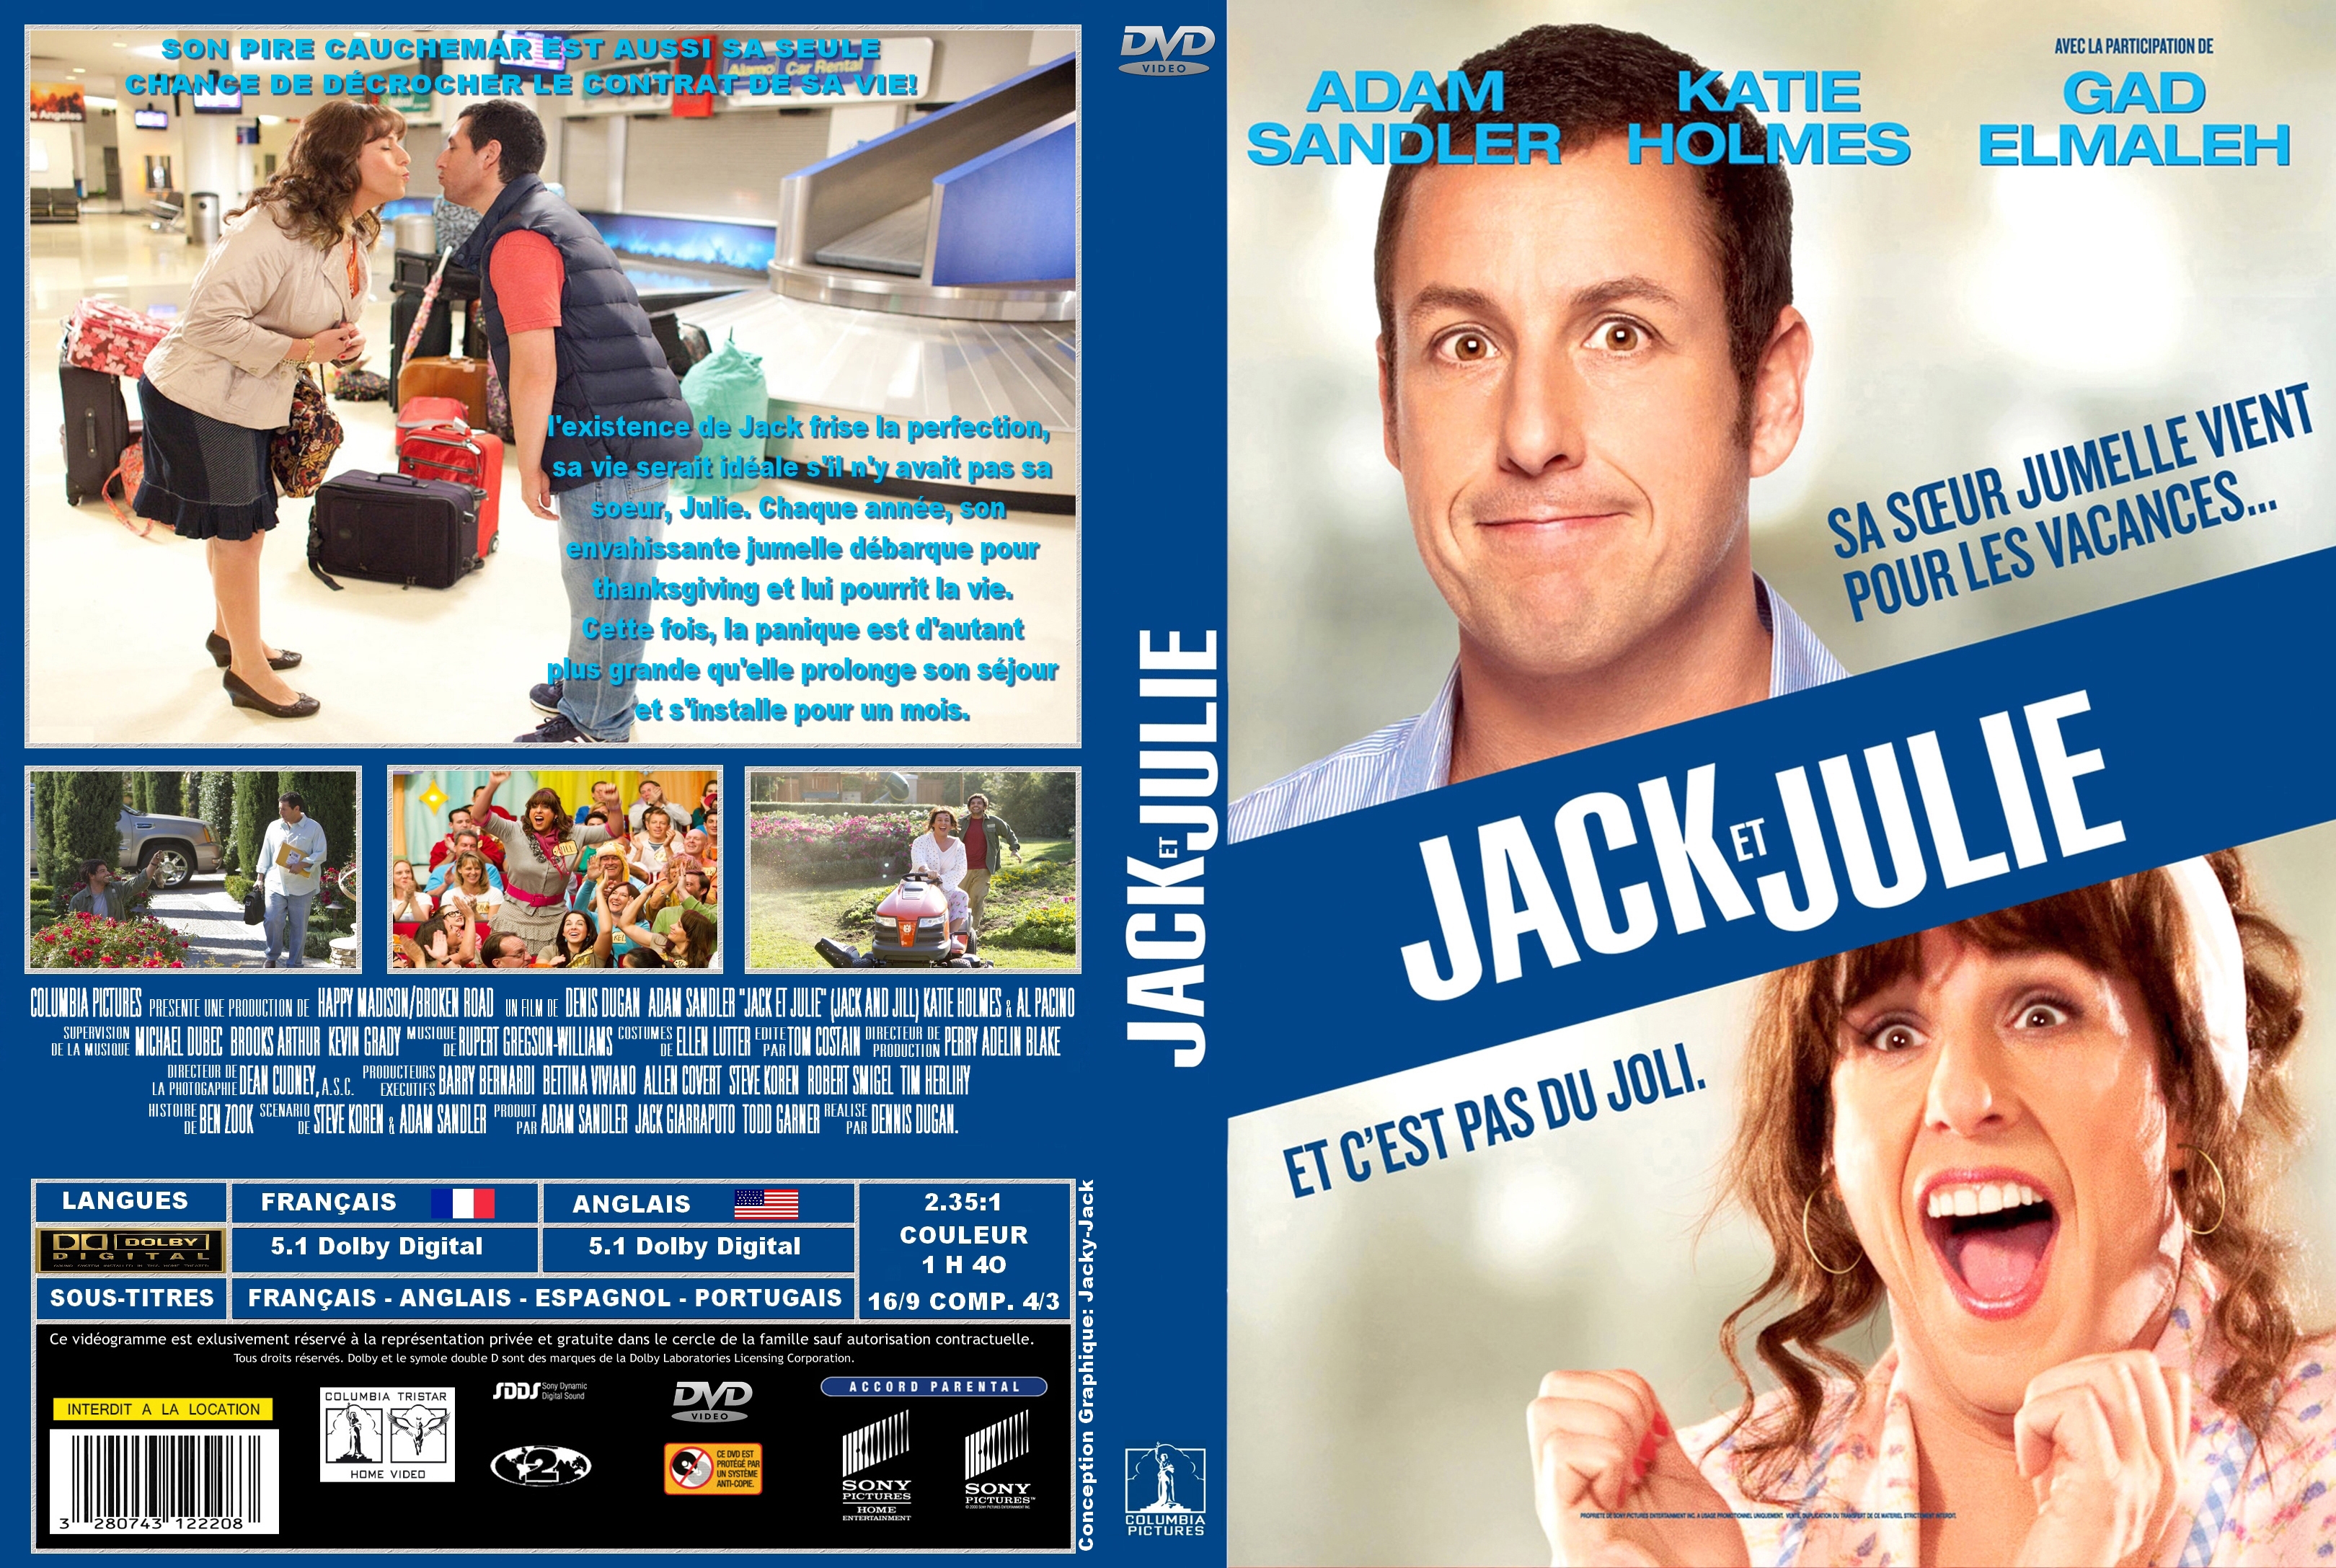 Jaquette DVD Jack et Julie custom